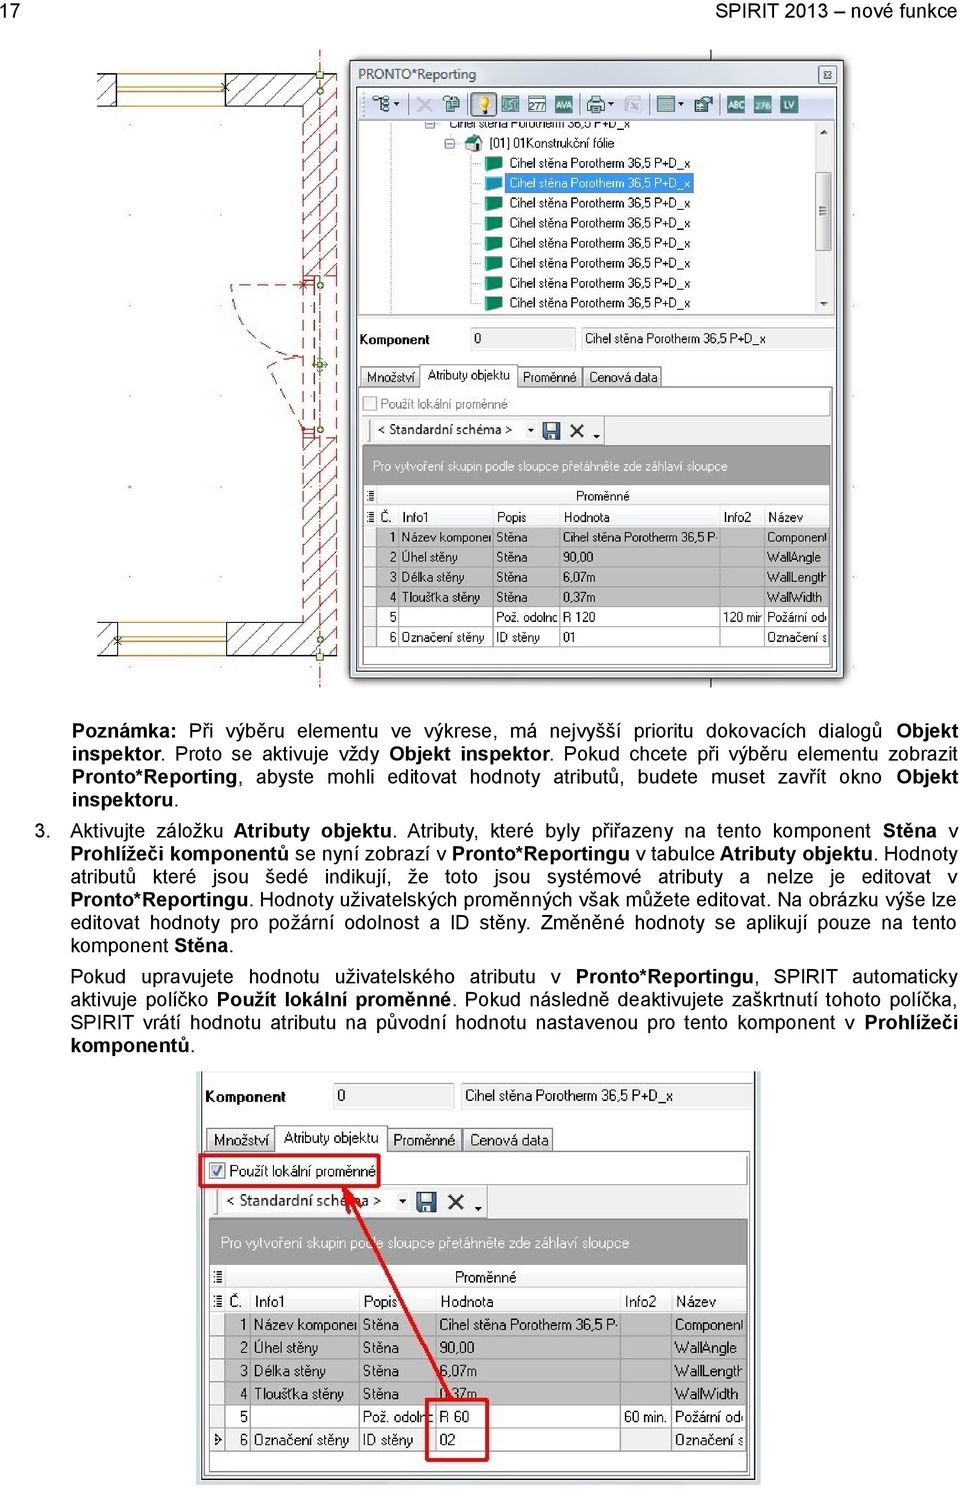 Atributy, které byly přiřazeny na tento komponent Stěna v Prohlížeči komponentů se nyní zobrazí v Pronto*Reportingu v tabulce Atributy objektu.